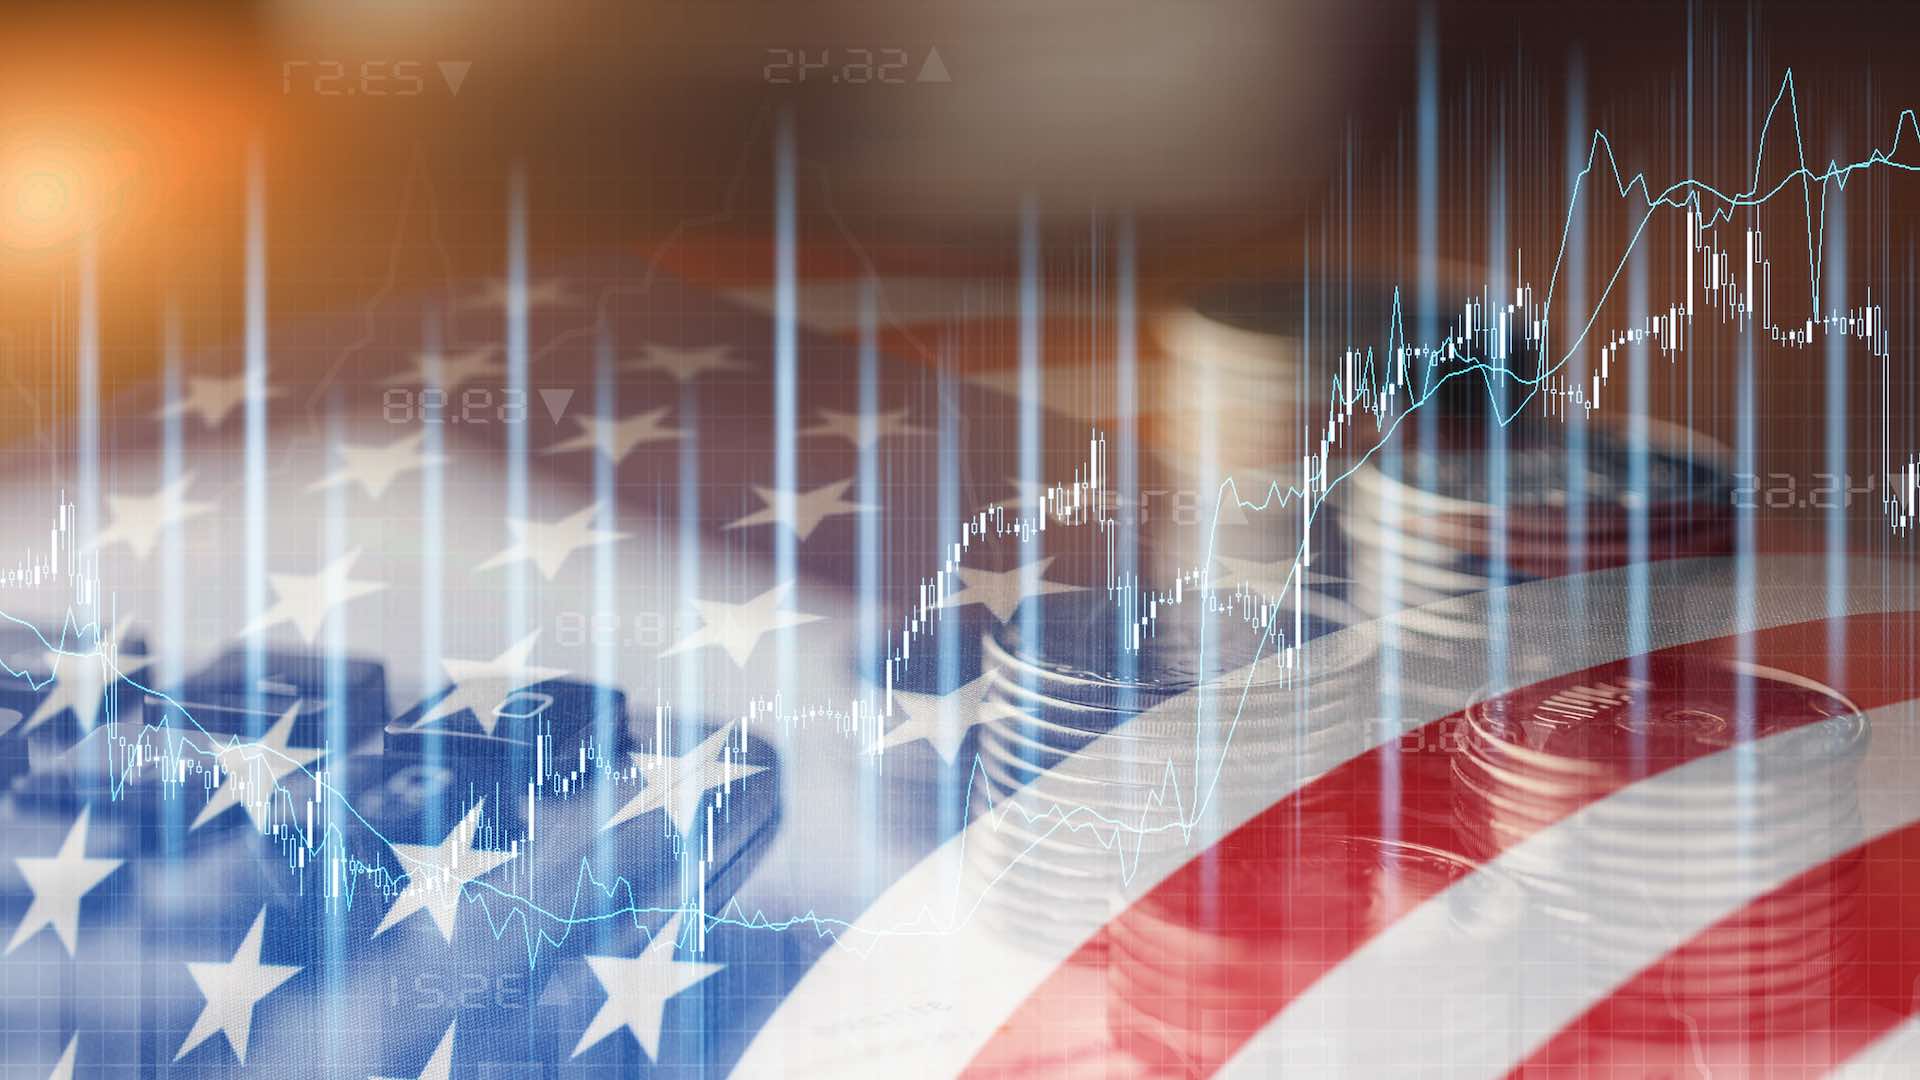 जैसे-जैसे 2024 नजदीक आ रहा है, अमेरिकी अर्थव्यवस्था को चुनौतियों और आशावाद के मिश्रण का सामना करना पड़ रहा है